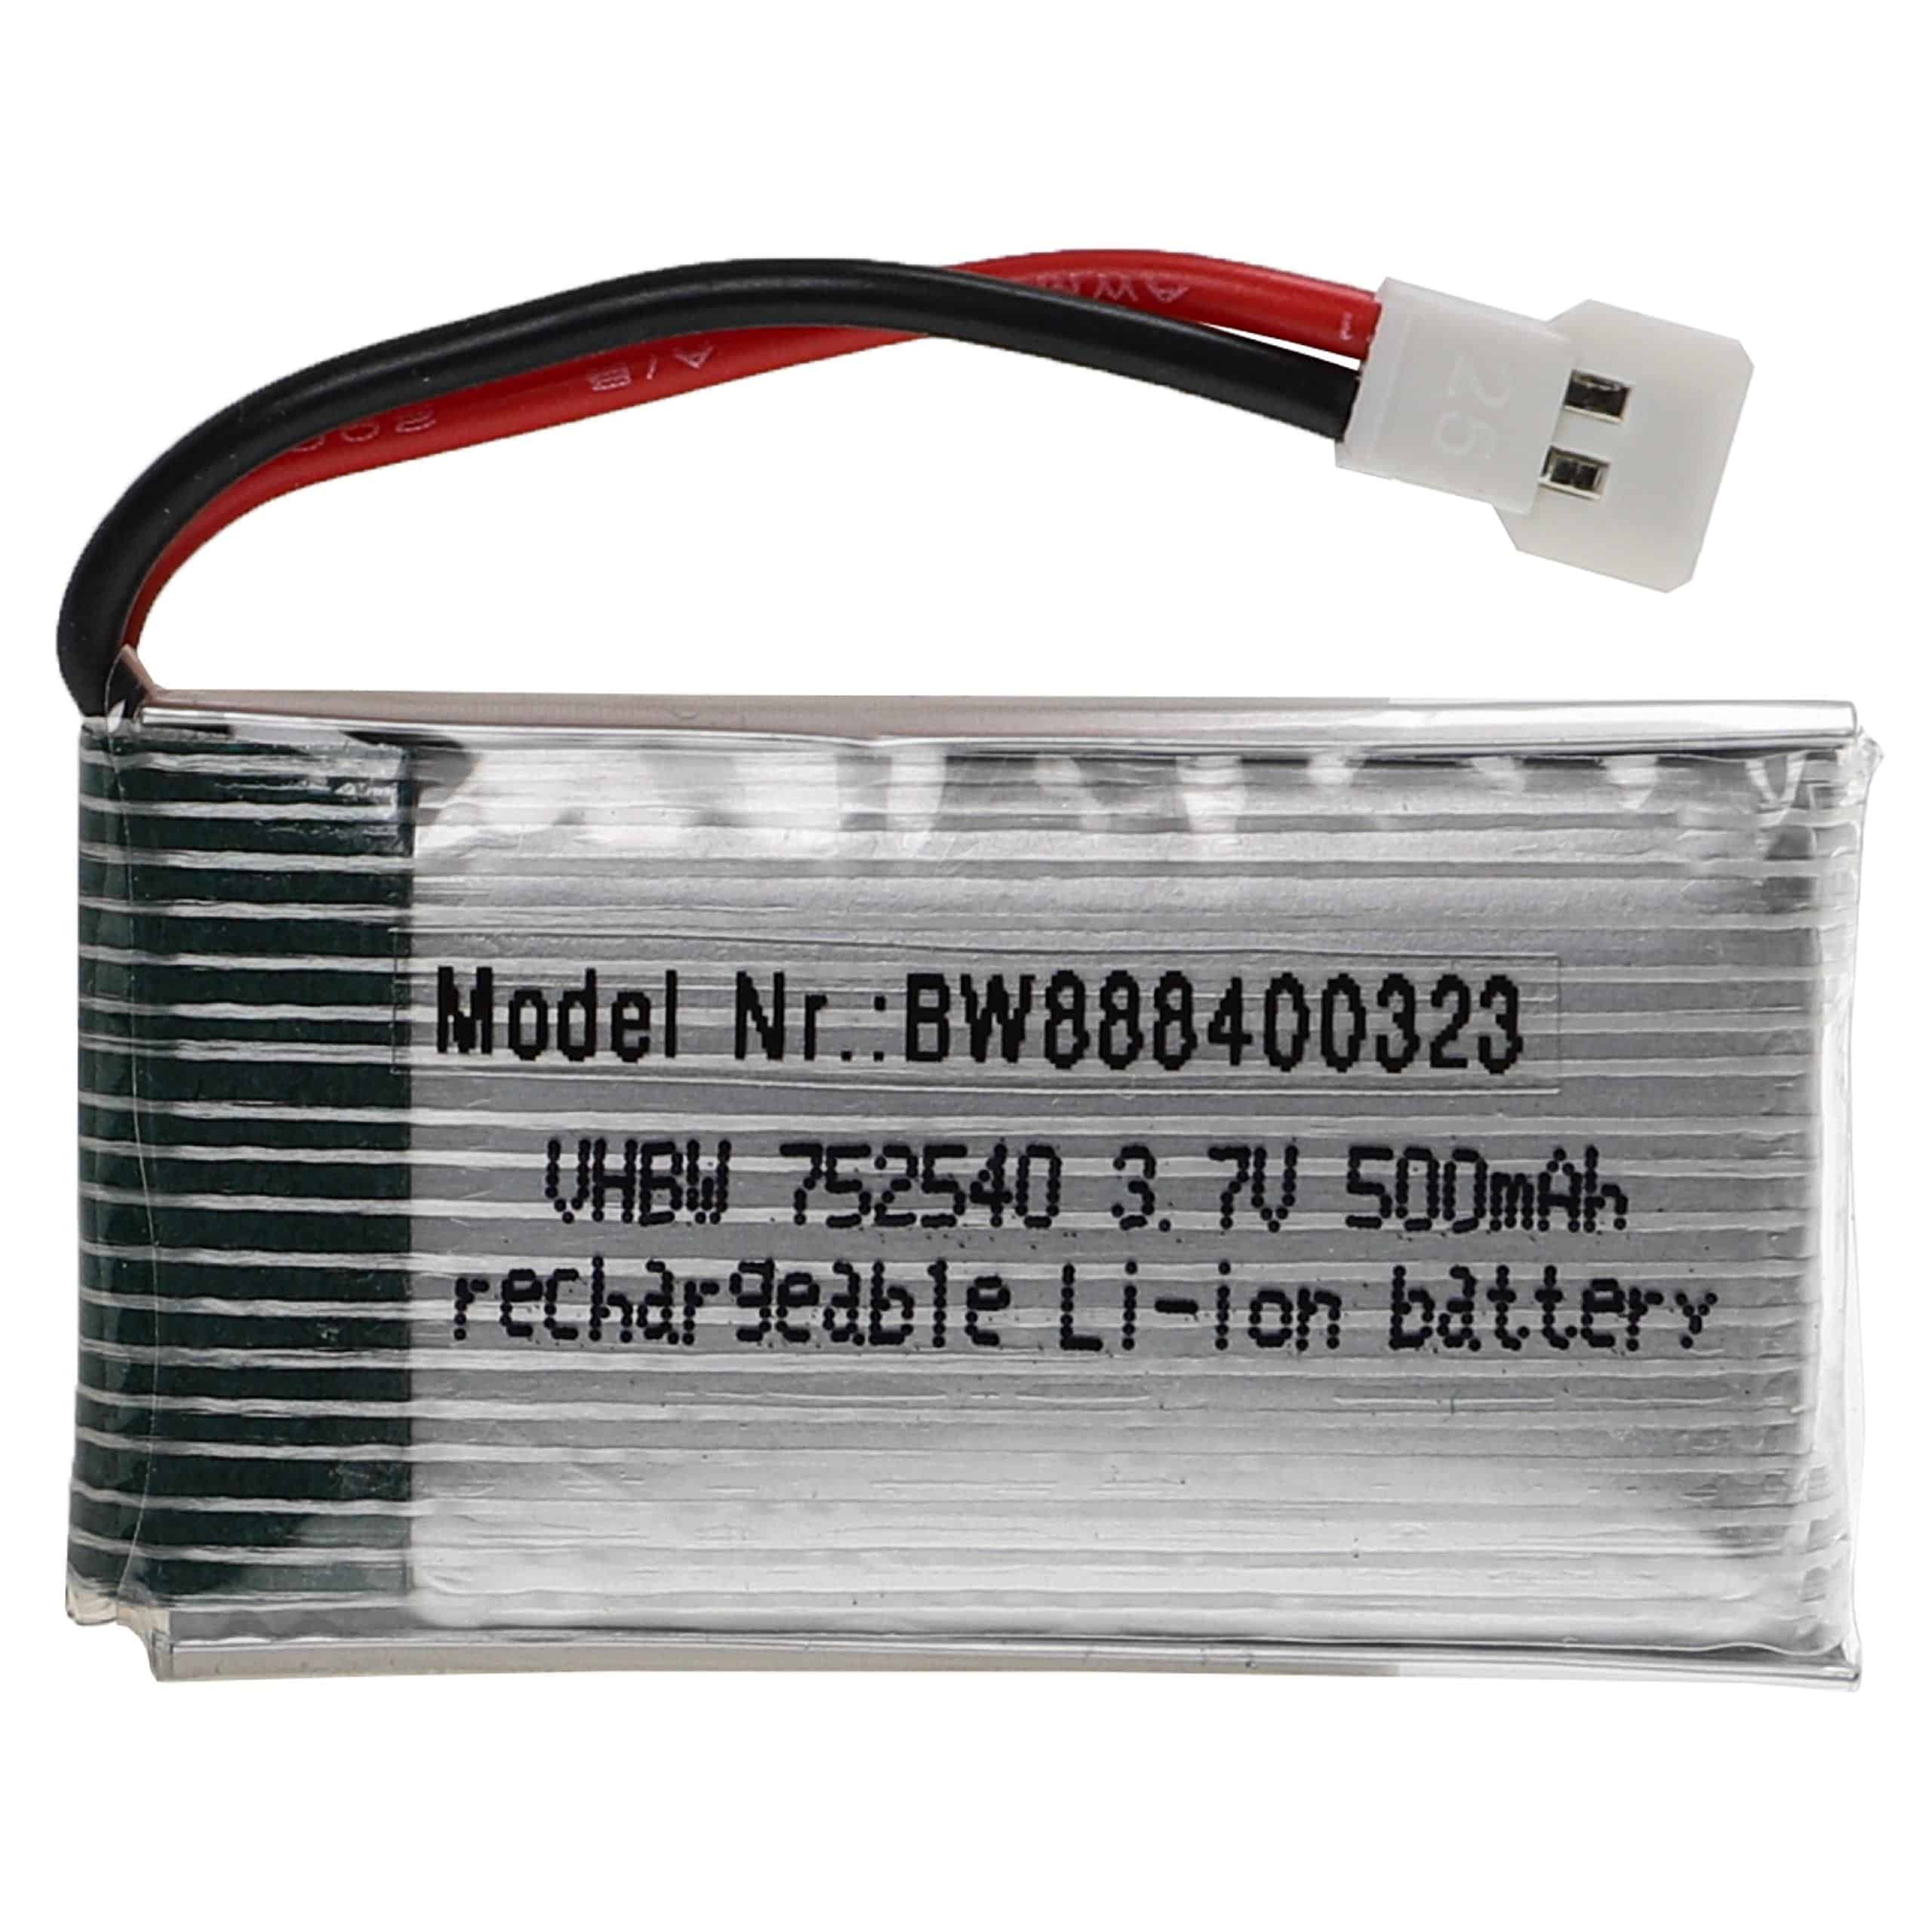 Batería para dispositivos modelismo - 500 mAh 3,7 V Li-poli, XH 2.54 2P